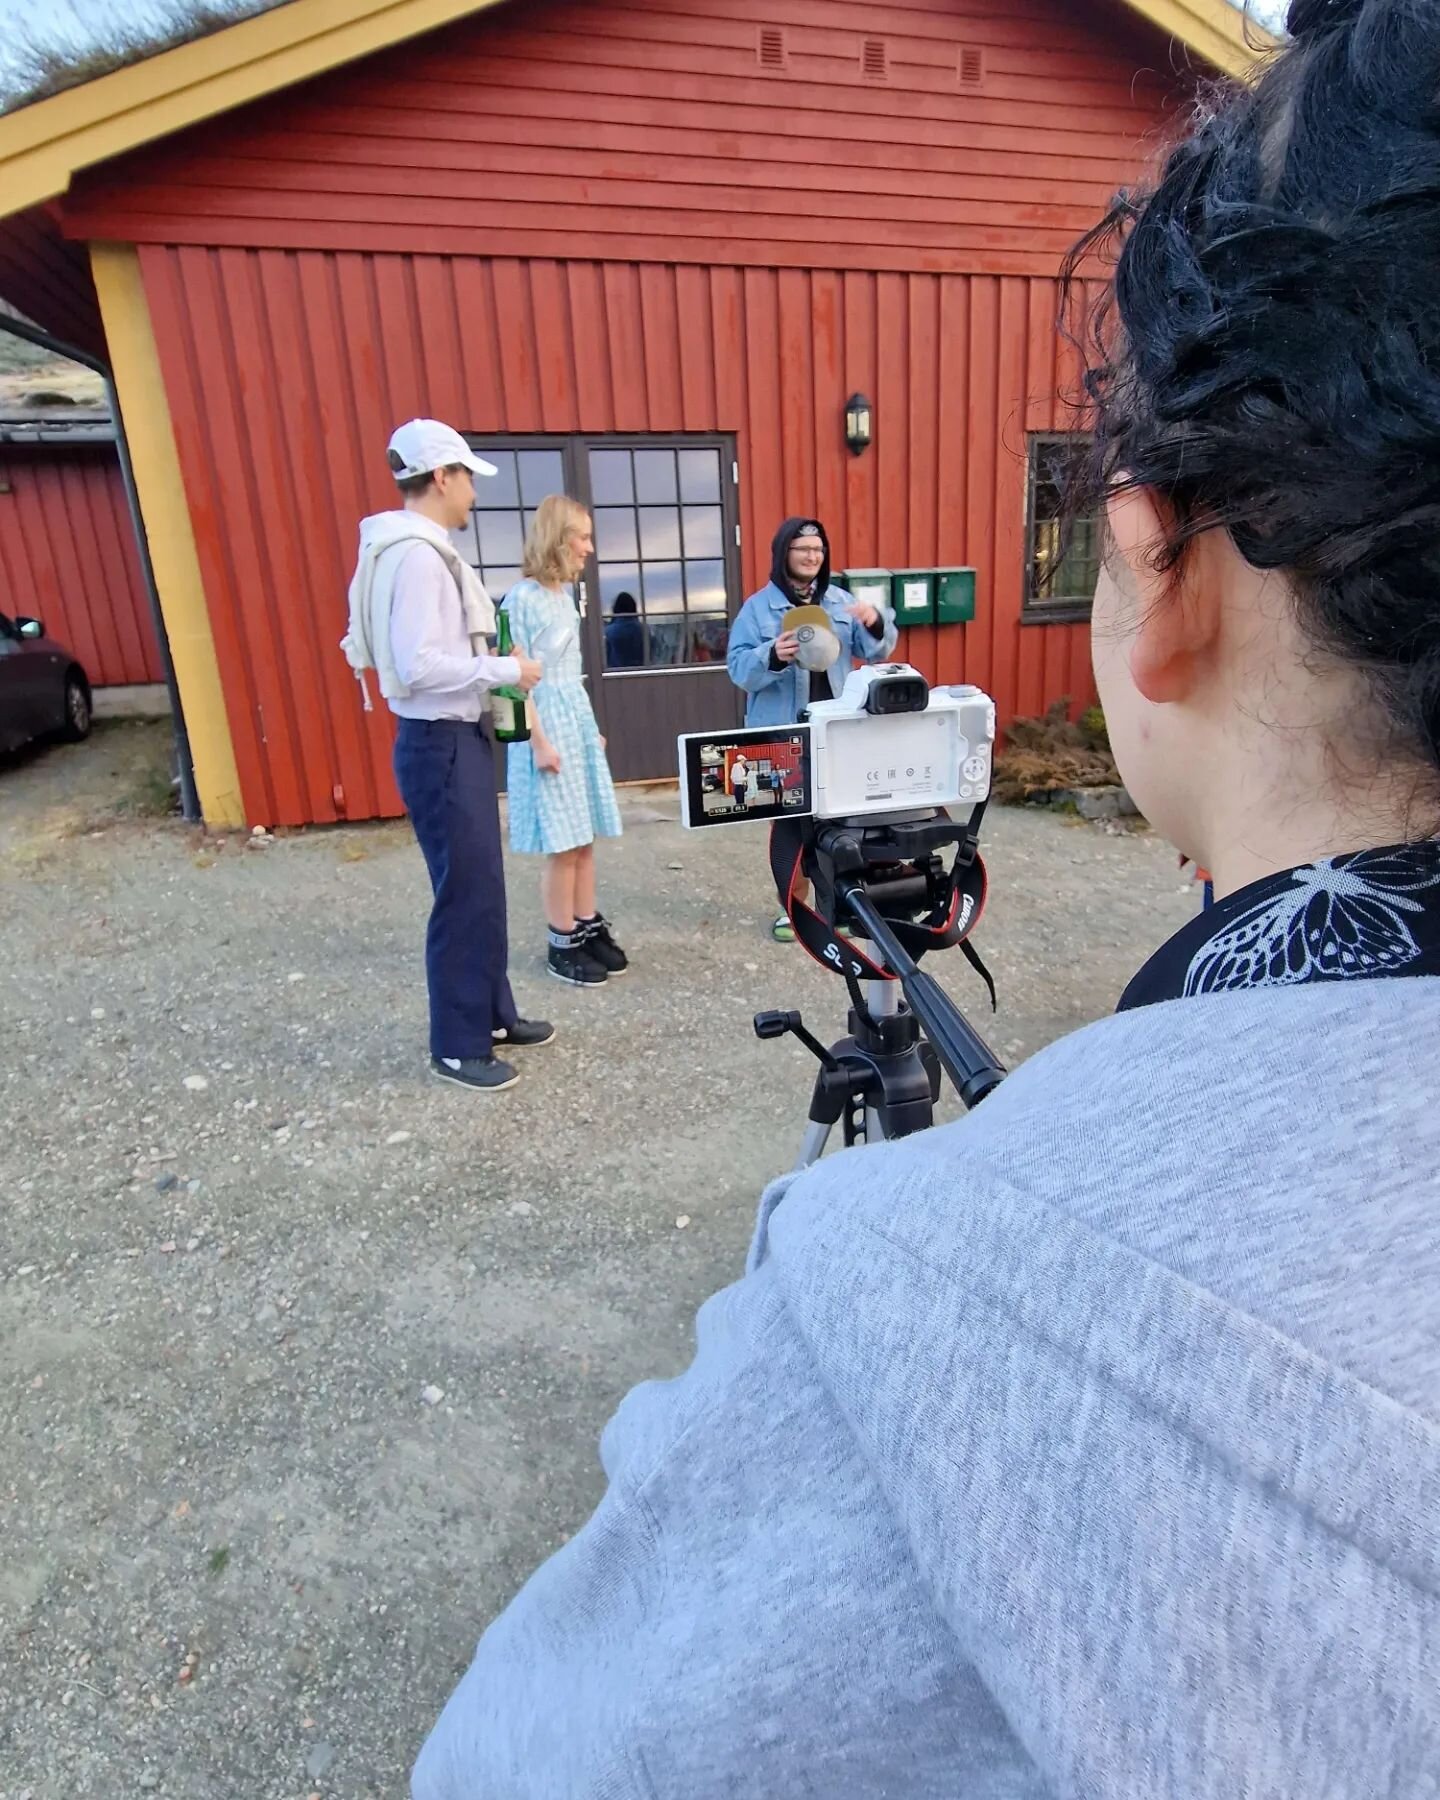 P&aring; valgfag kortfilm har elevene f&aring;tt pr&oslash;ve seg &aring; lage alle aspektene av en kort film, fra planlegging, rekvisitter og sminke til filming, lydopptak og redigering. Fult film crew som har laget en film p&aring; en uke.
#namdals